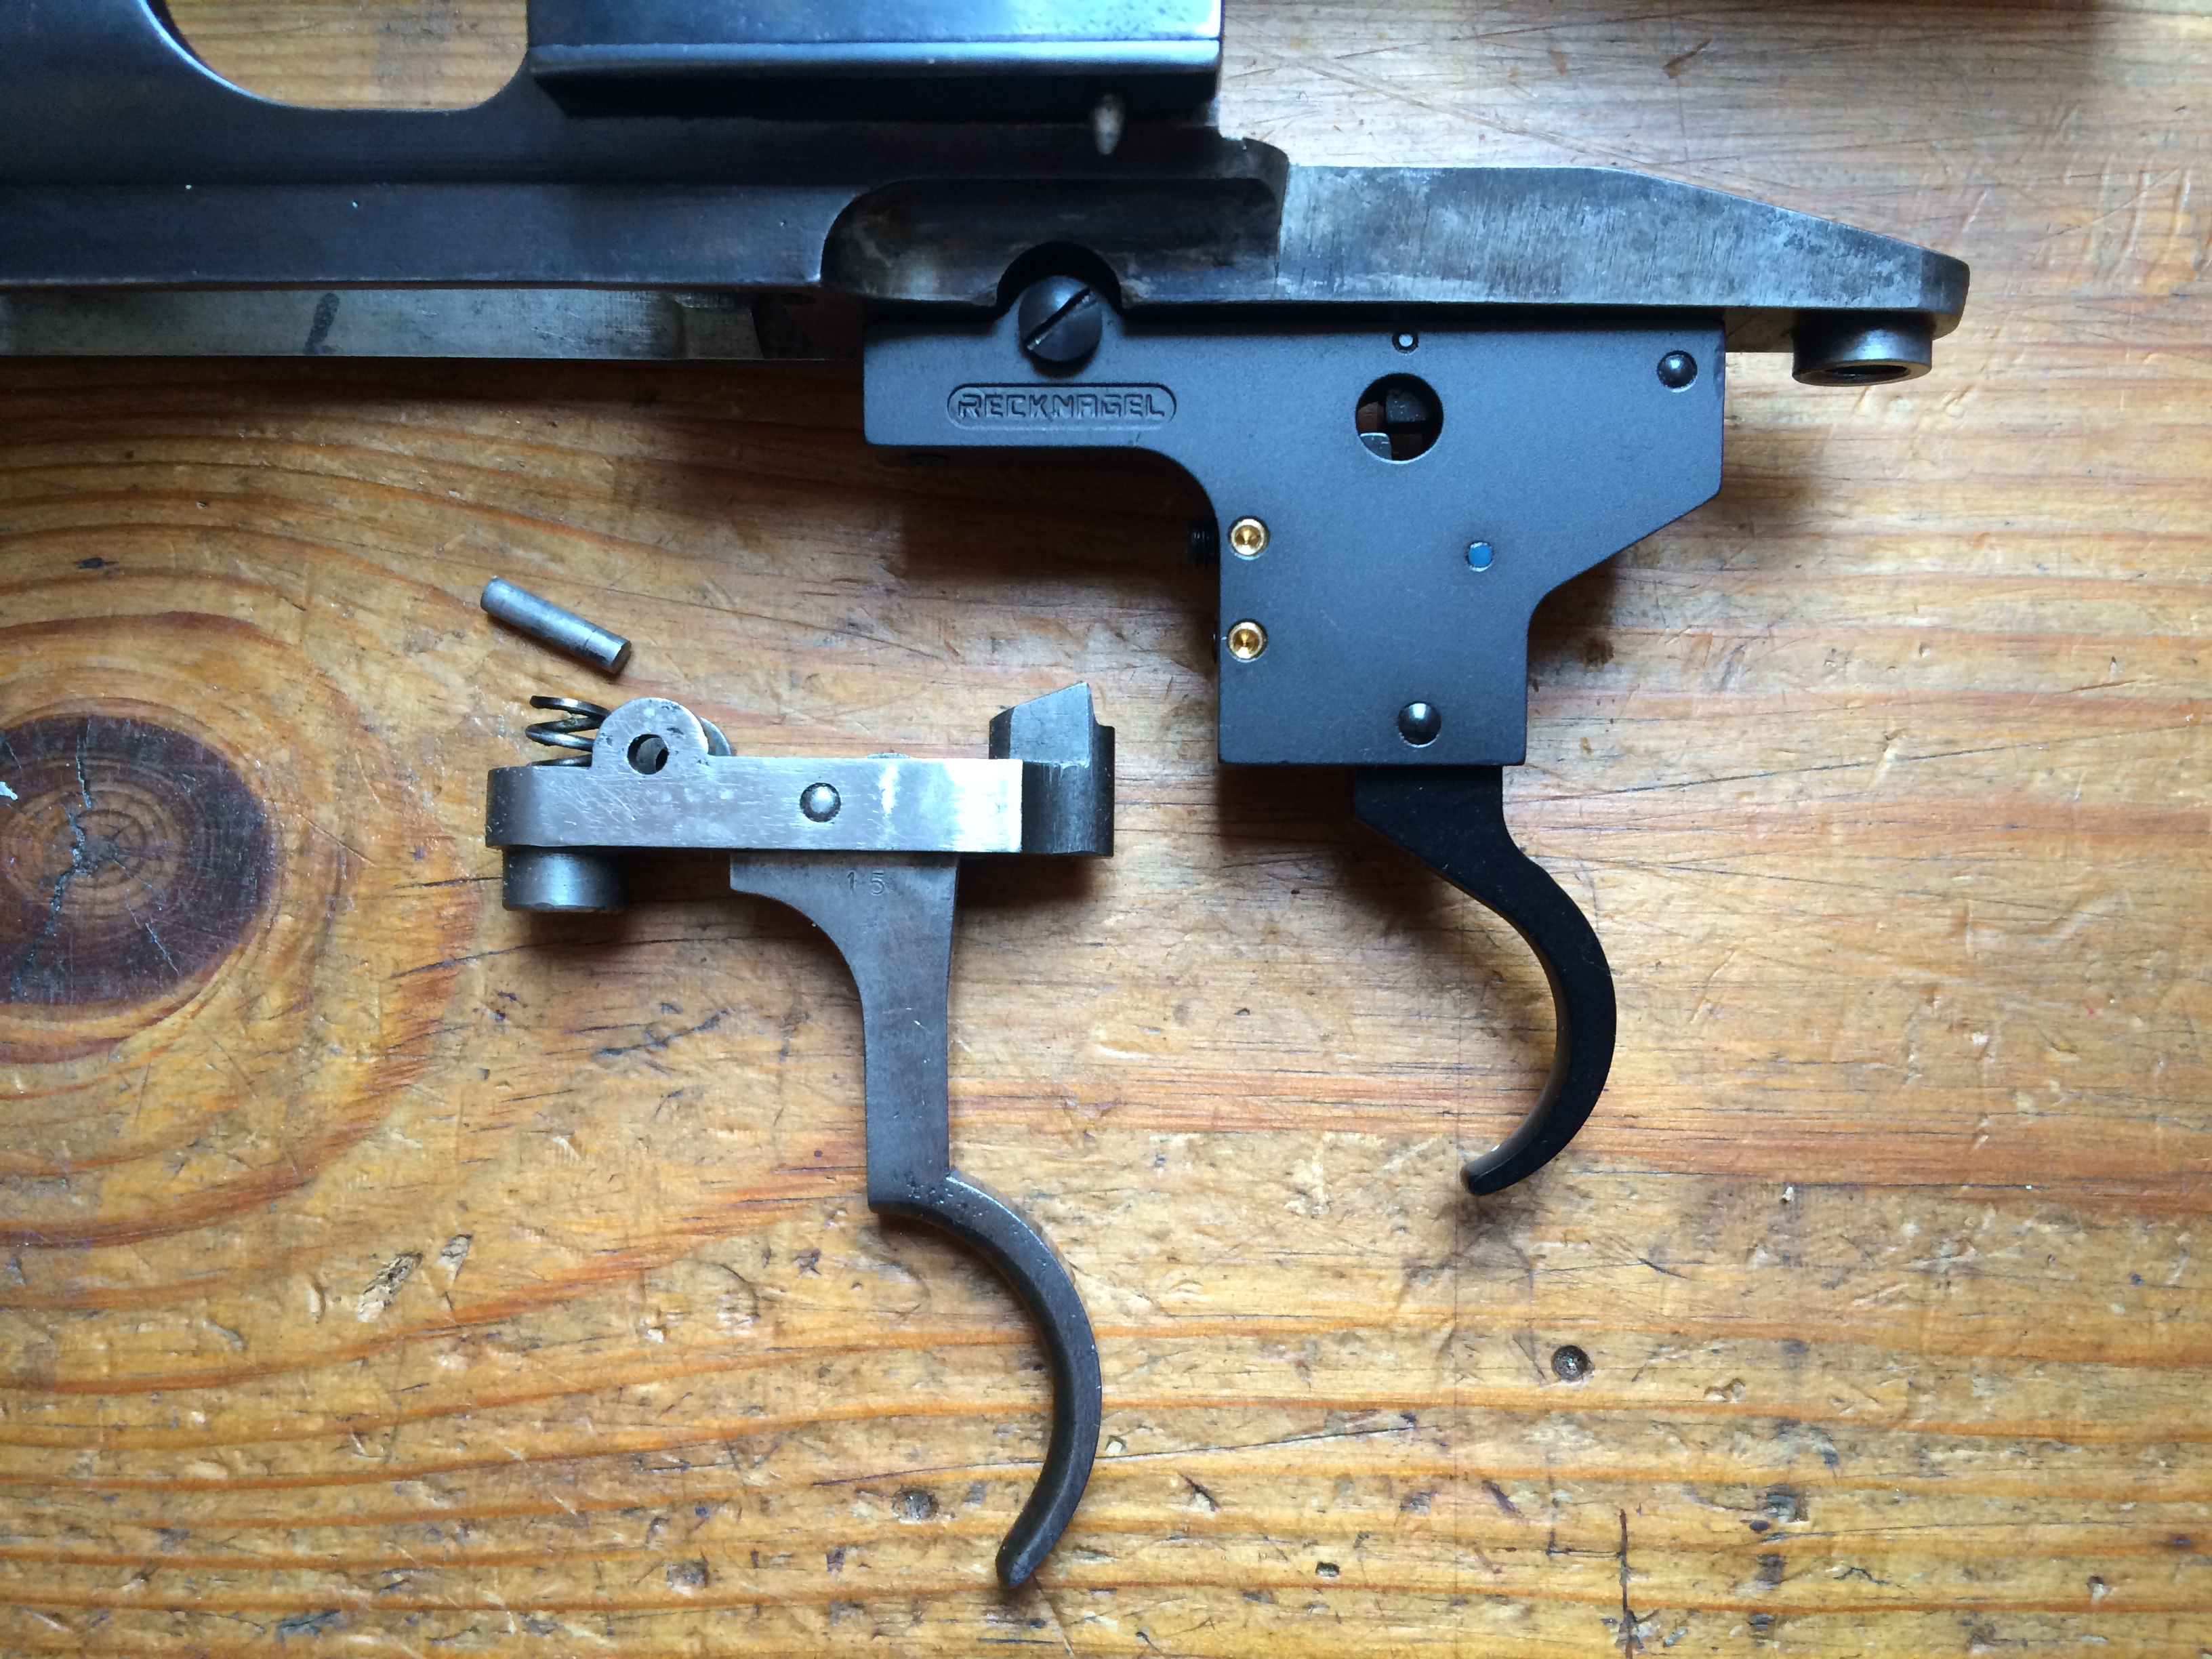 Replacement adjustable trigger set (Above)

Original Mauser trigger (Below)- click to enlarge.